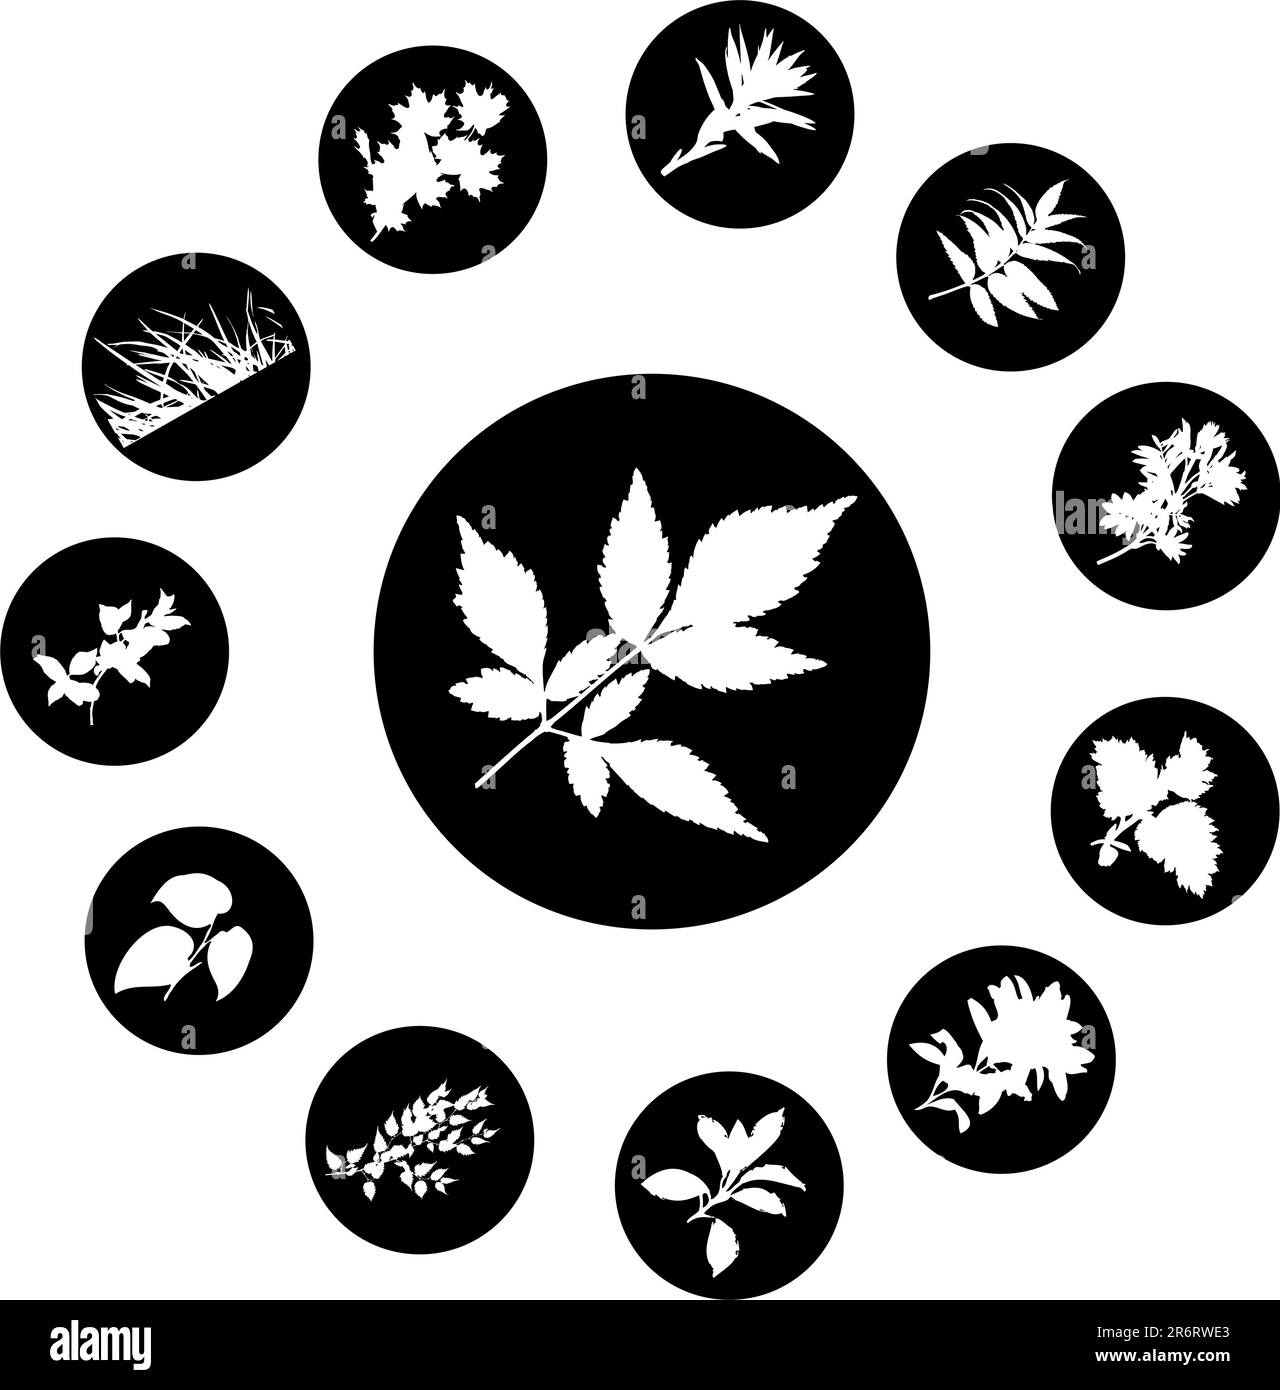 El conjunto de siluetas de hojas, se presenta en forma de 12 botones. Ilustración del Vector